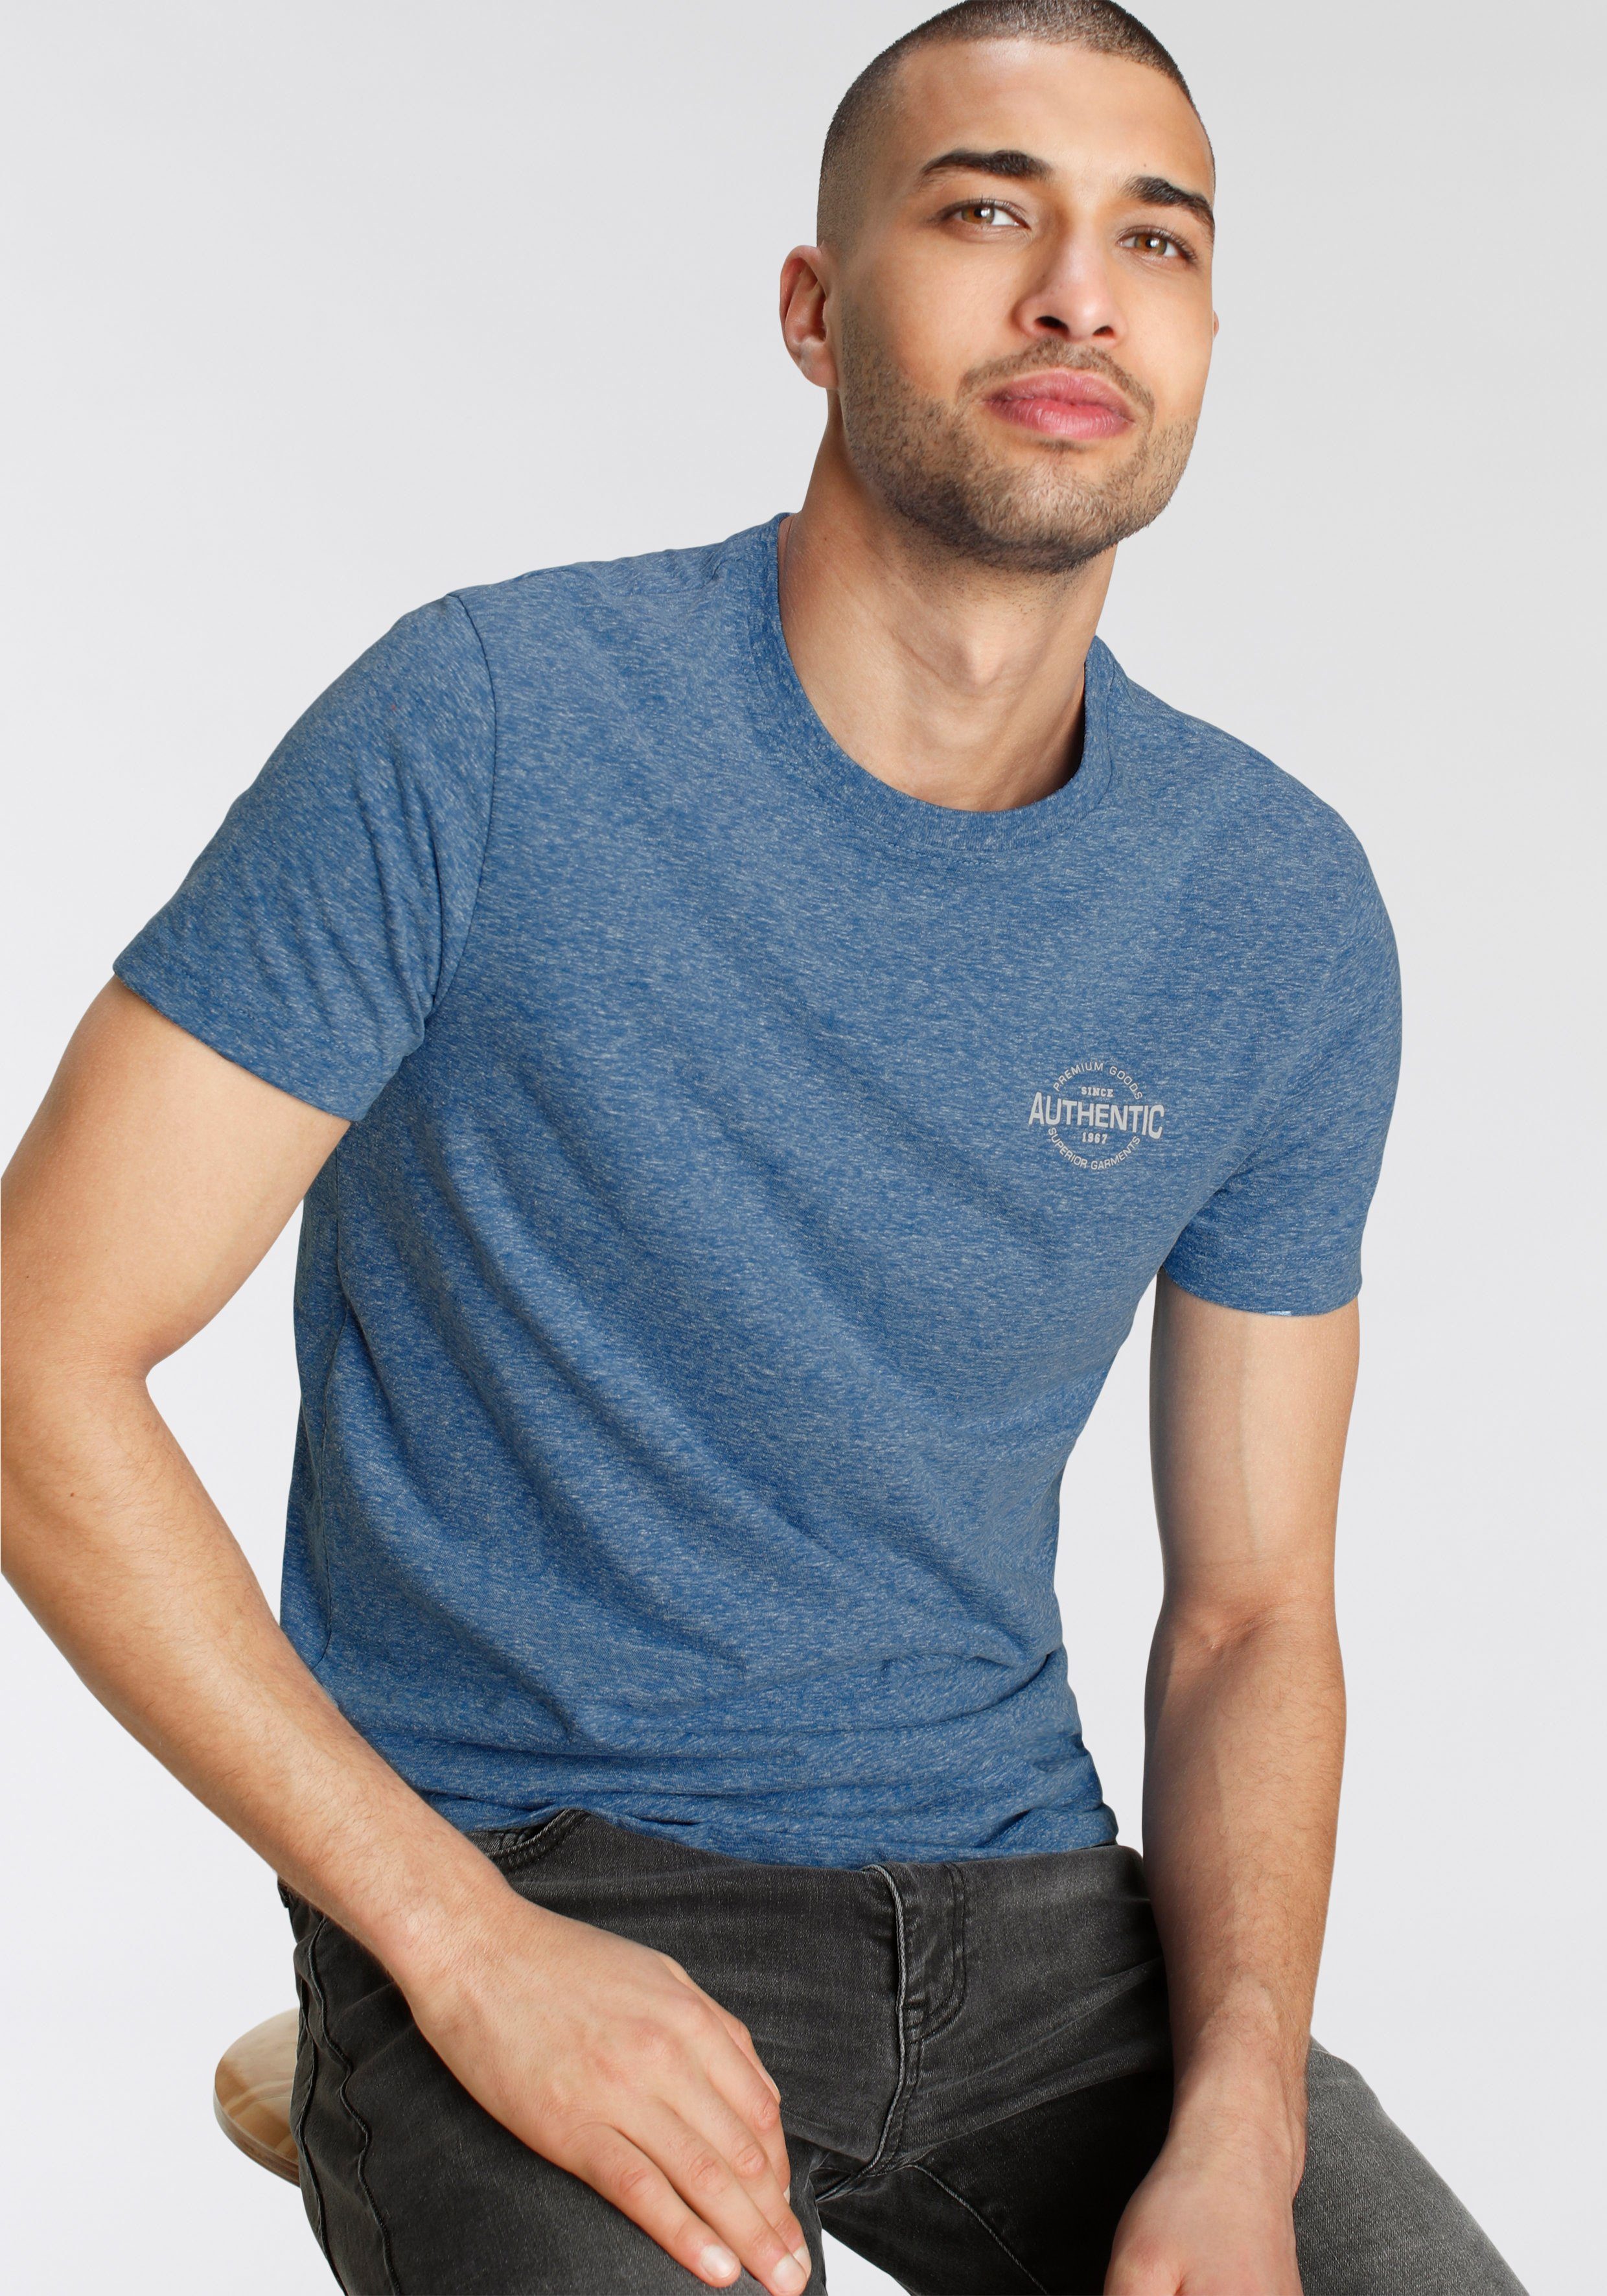 supergünstiger Preis AJC T-Shirt in besonderer Melange Optik Print mit blau meliert und Logo